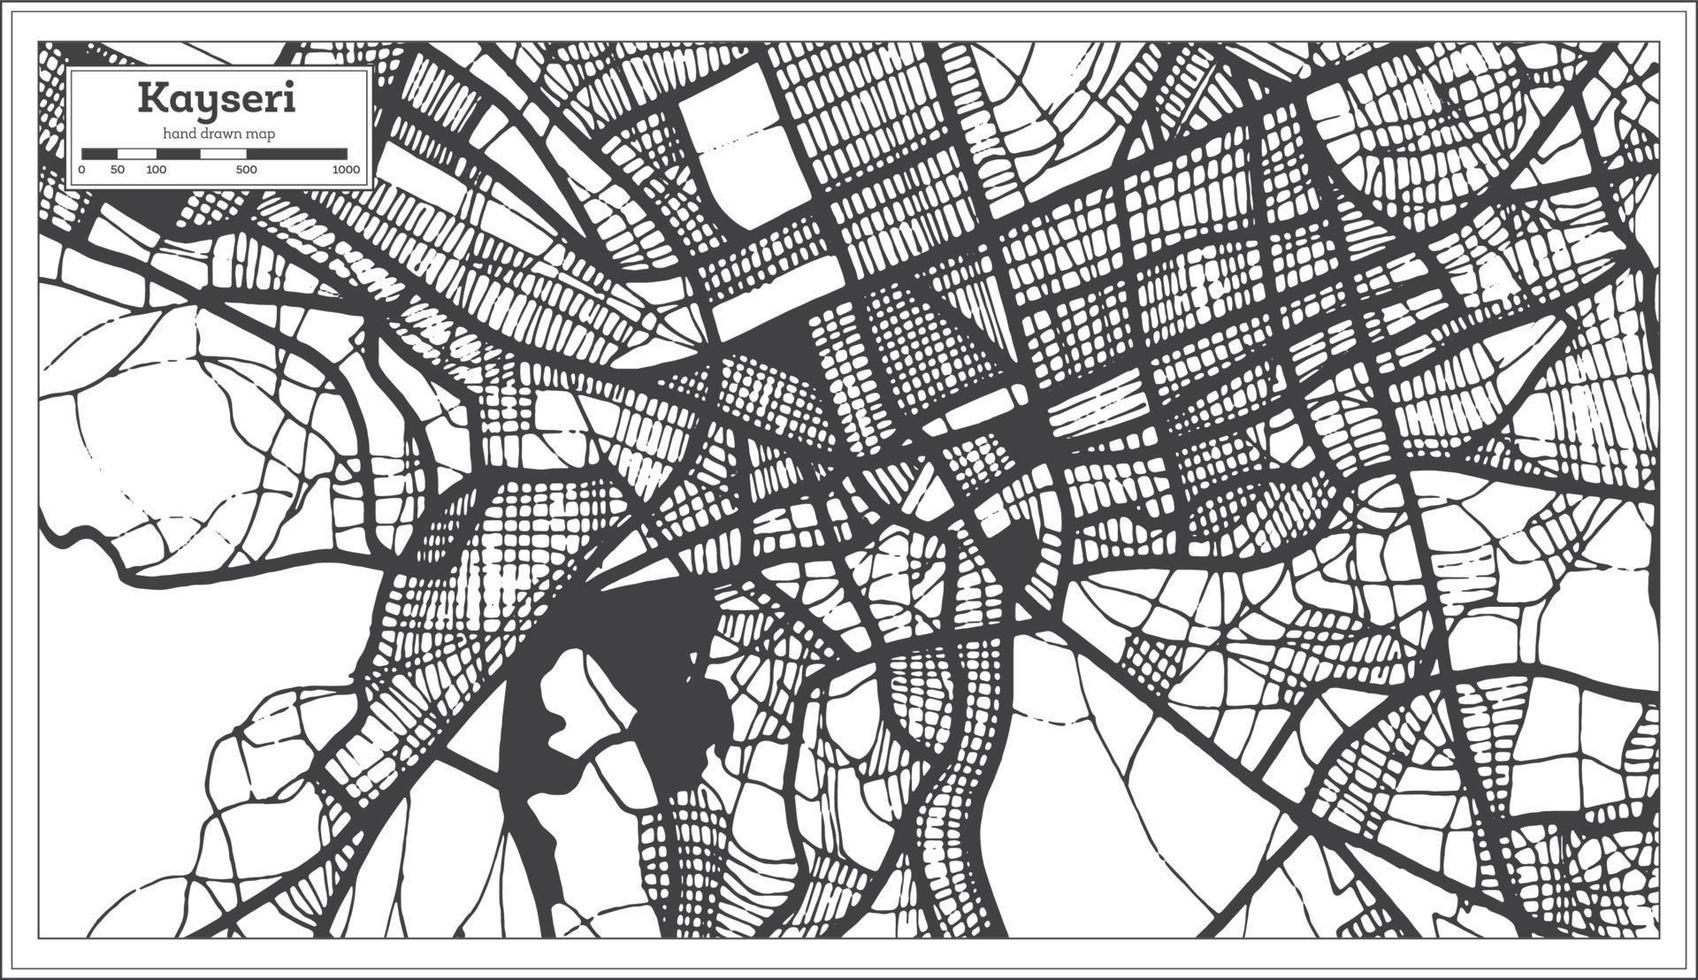 kayseri kalkoen stad kaart in zwart en wit kleur in retro stijl. schets kaart. vector